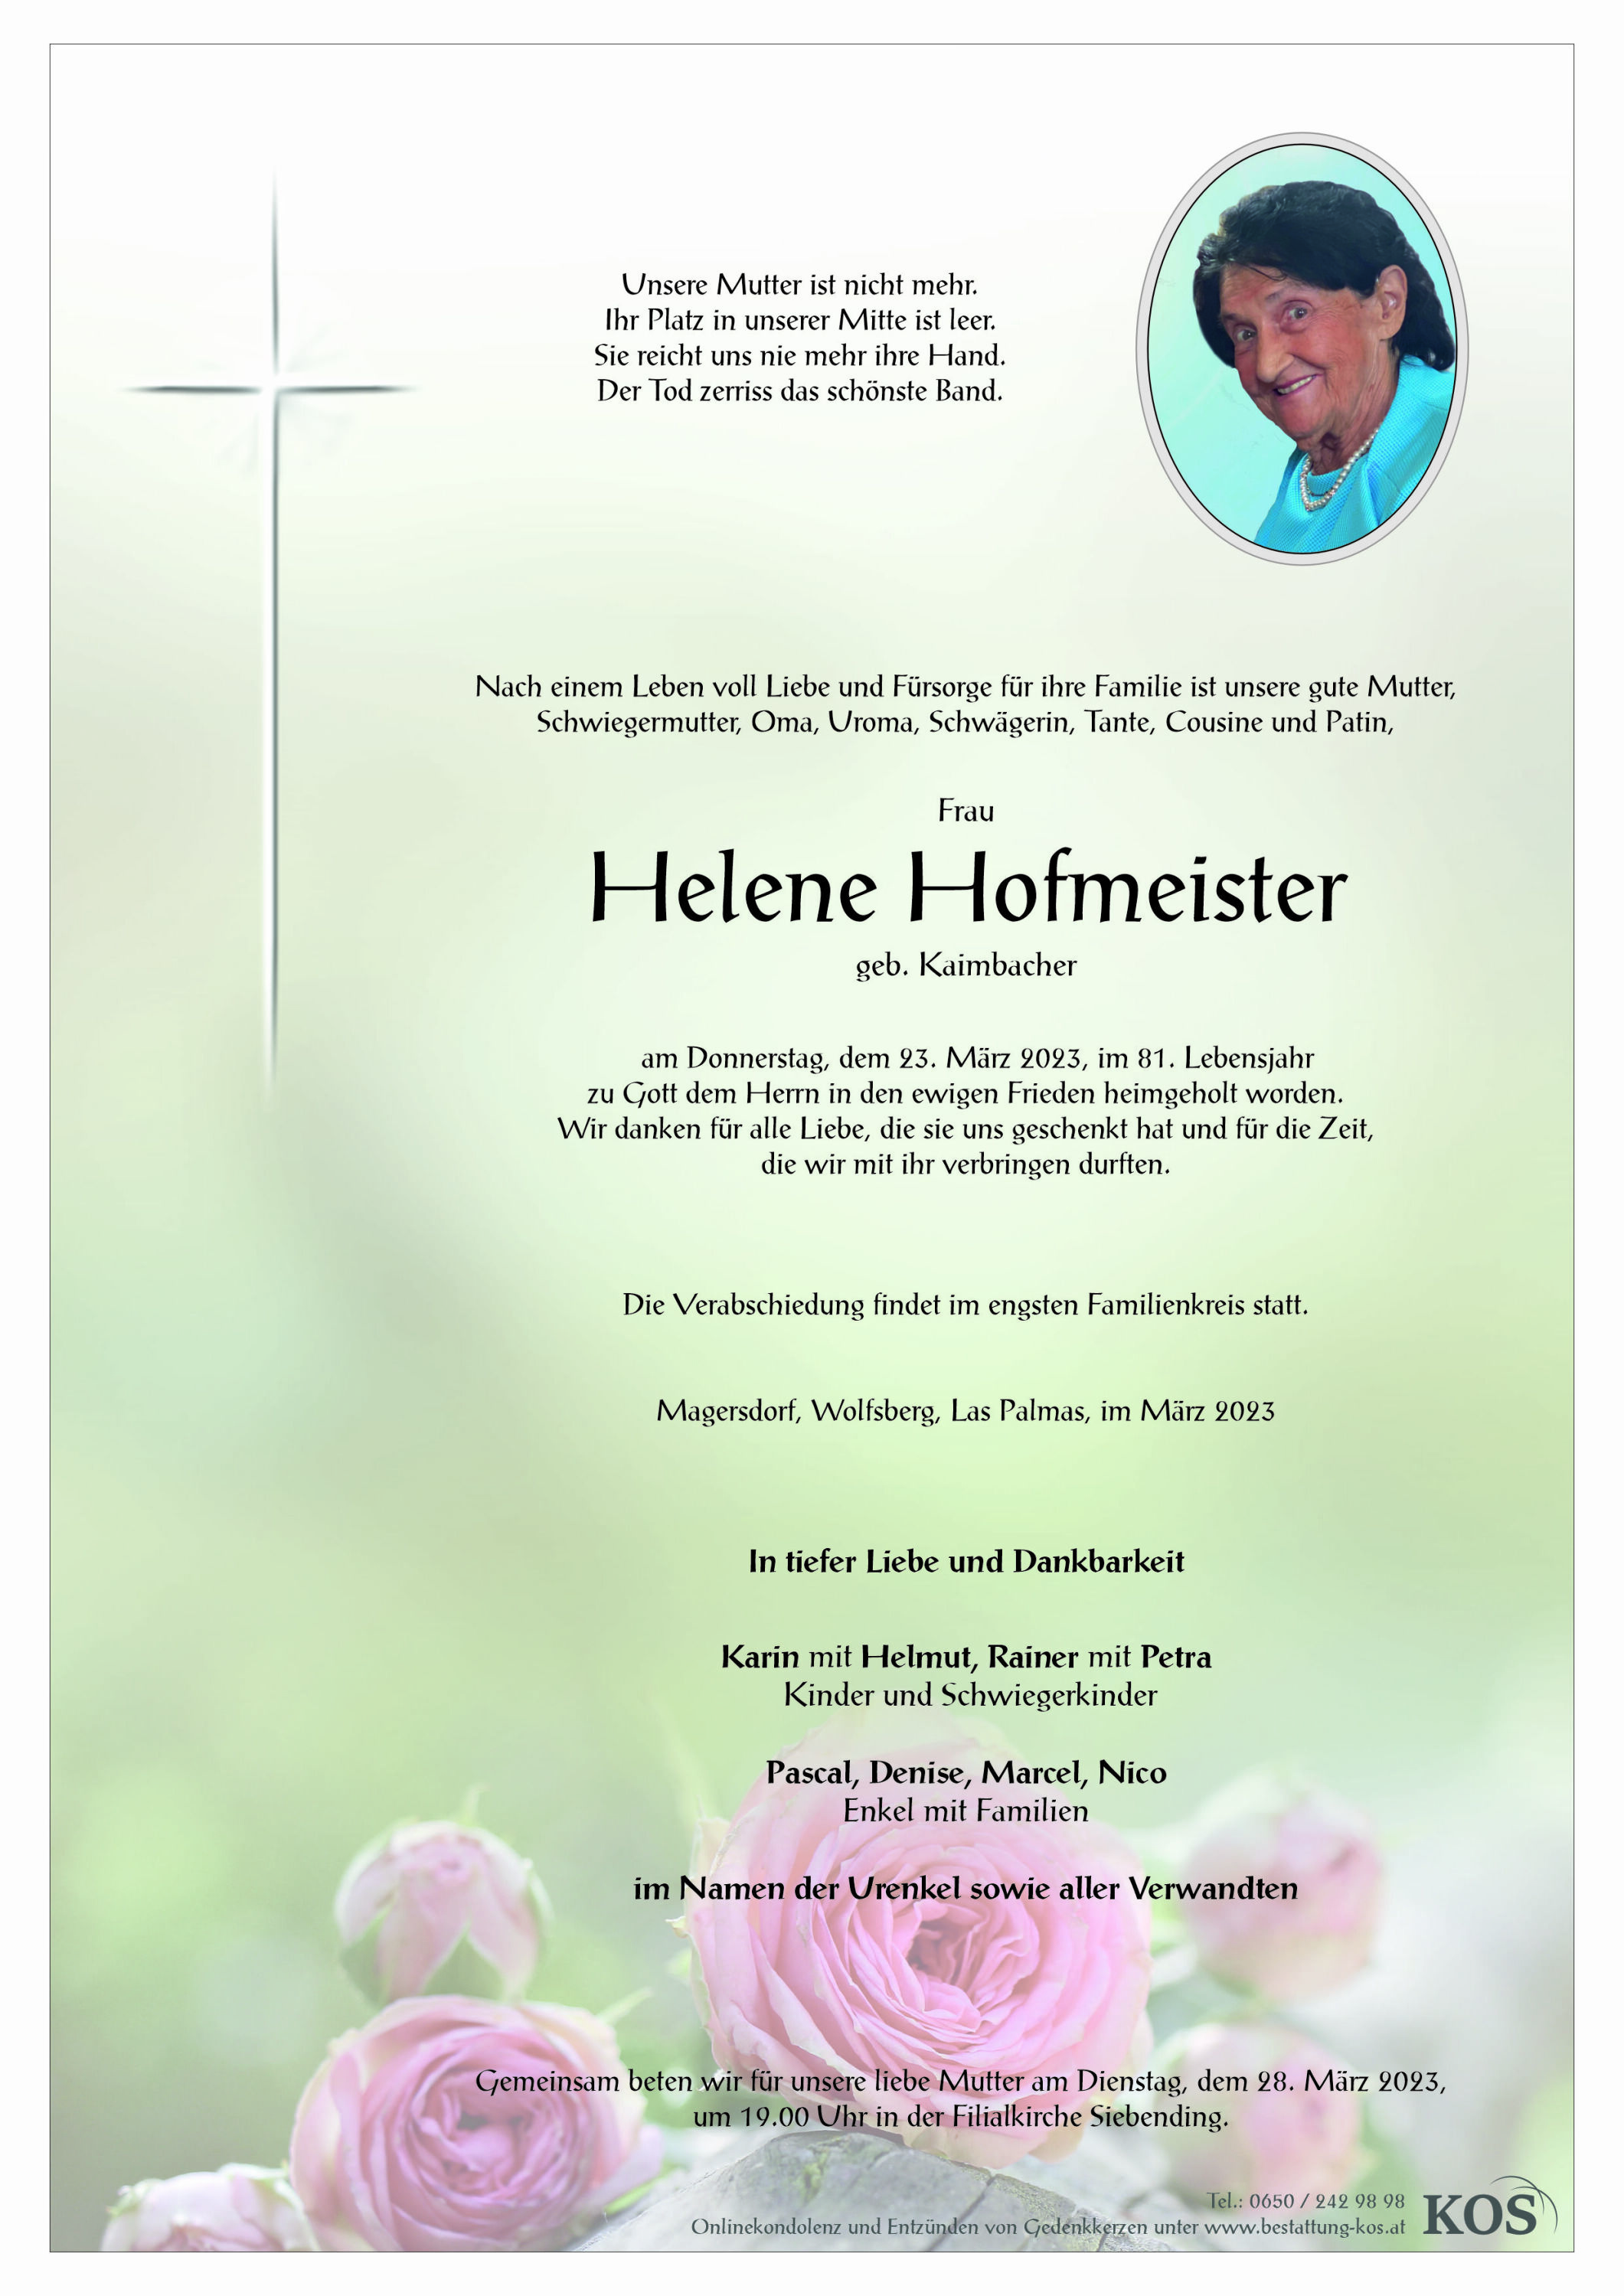 Helene Hofmeister